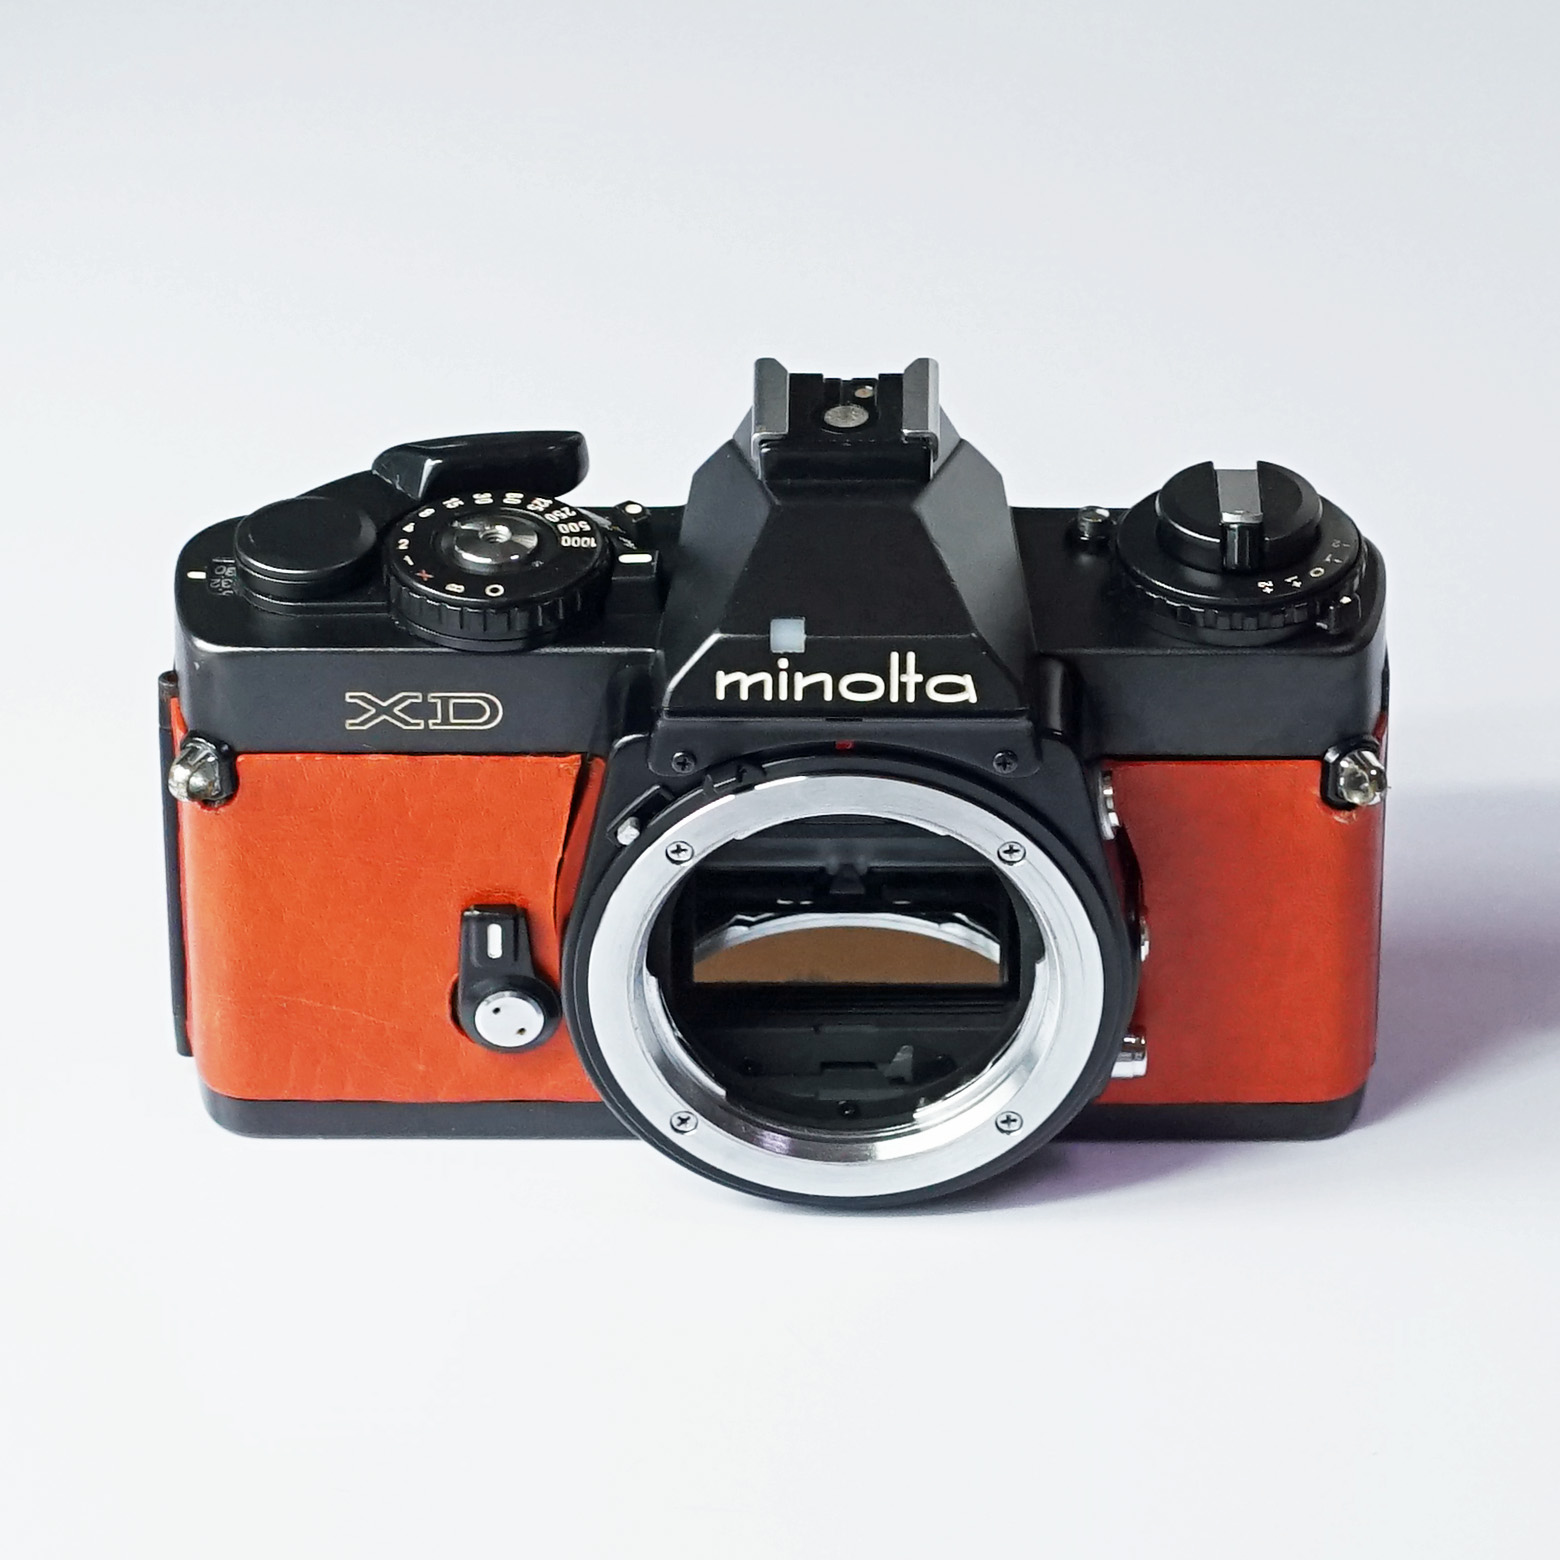 MINOLTA XD レンズ付き フィルムカメラ - フィルムカメラ